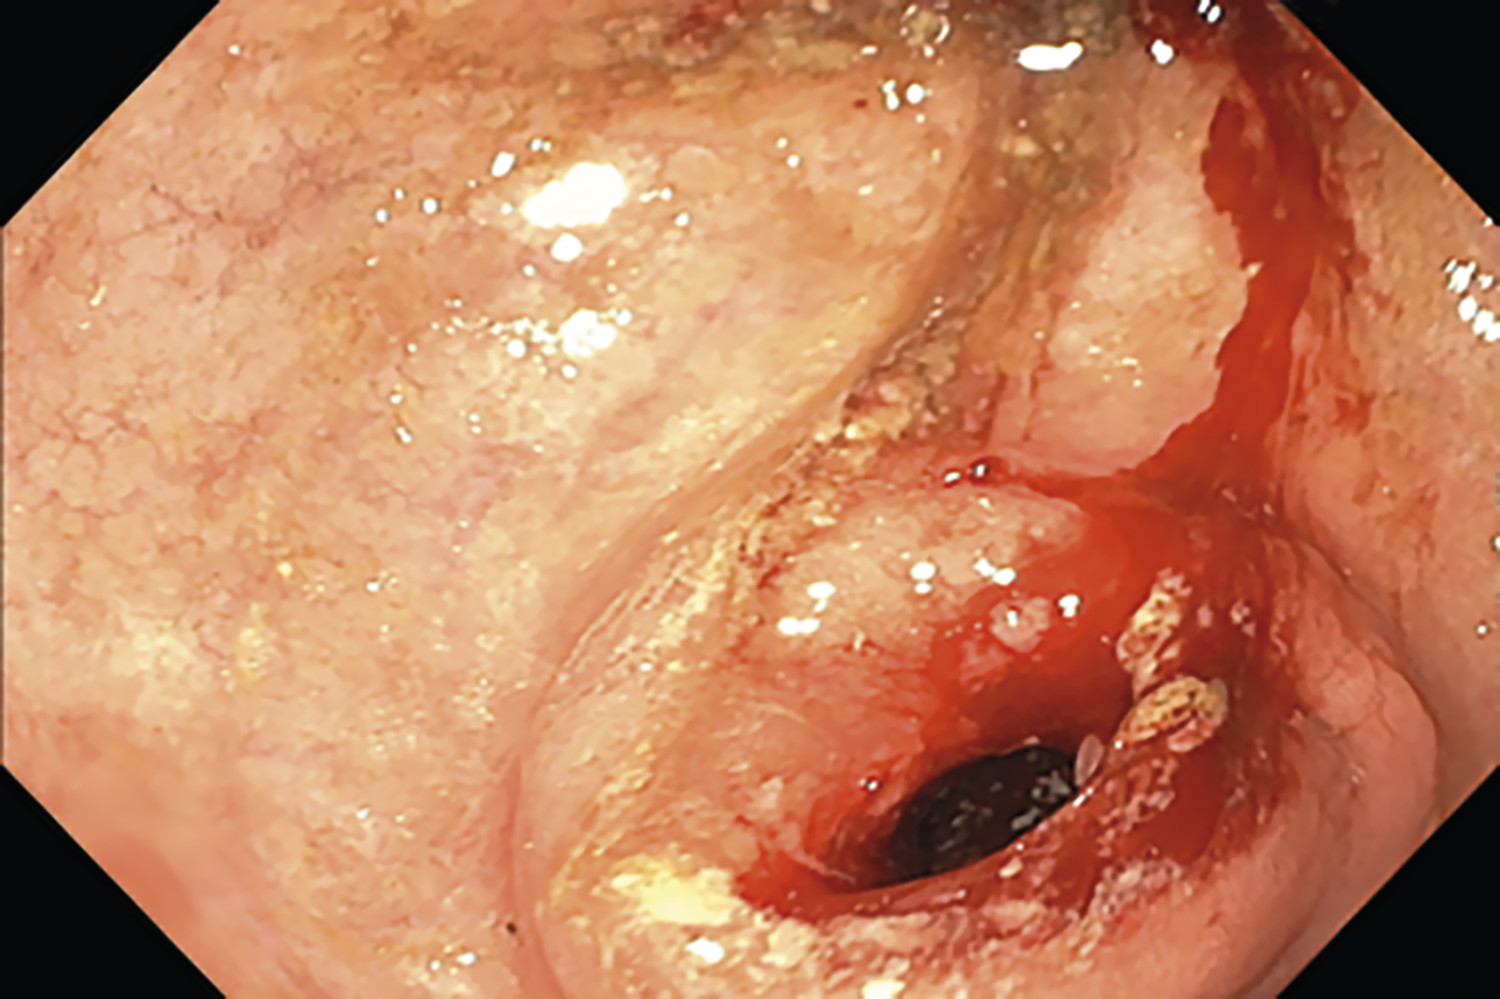 Sténose bulbaire chez une patiente atteinte de maladie de Crohn pédiatrique - Figure 1